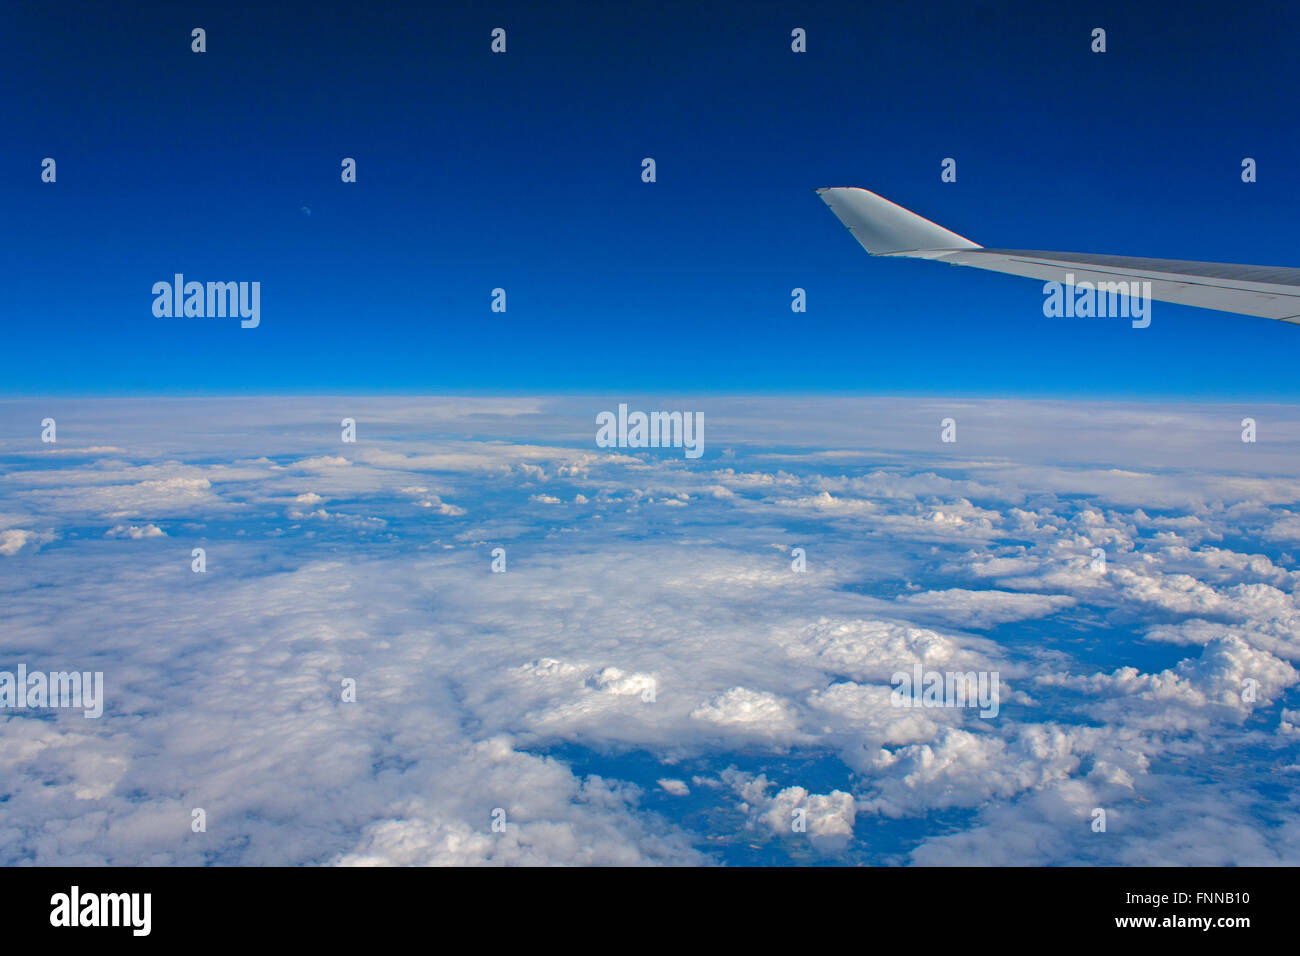 Vista desde la ventana de un avión por encima de las nubes mirando hacia abajo en Holanda con la Luna visible en el cielo azul por encima Foto de stock